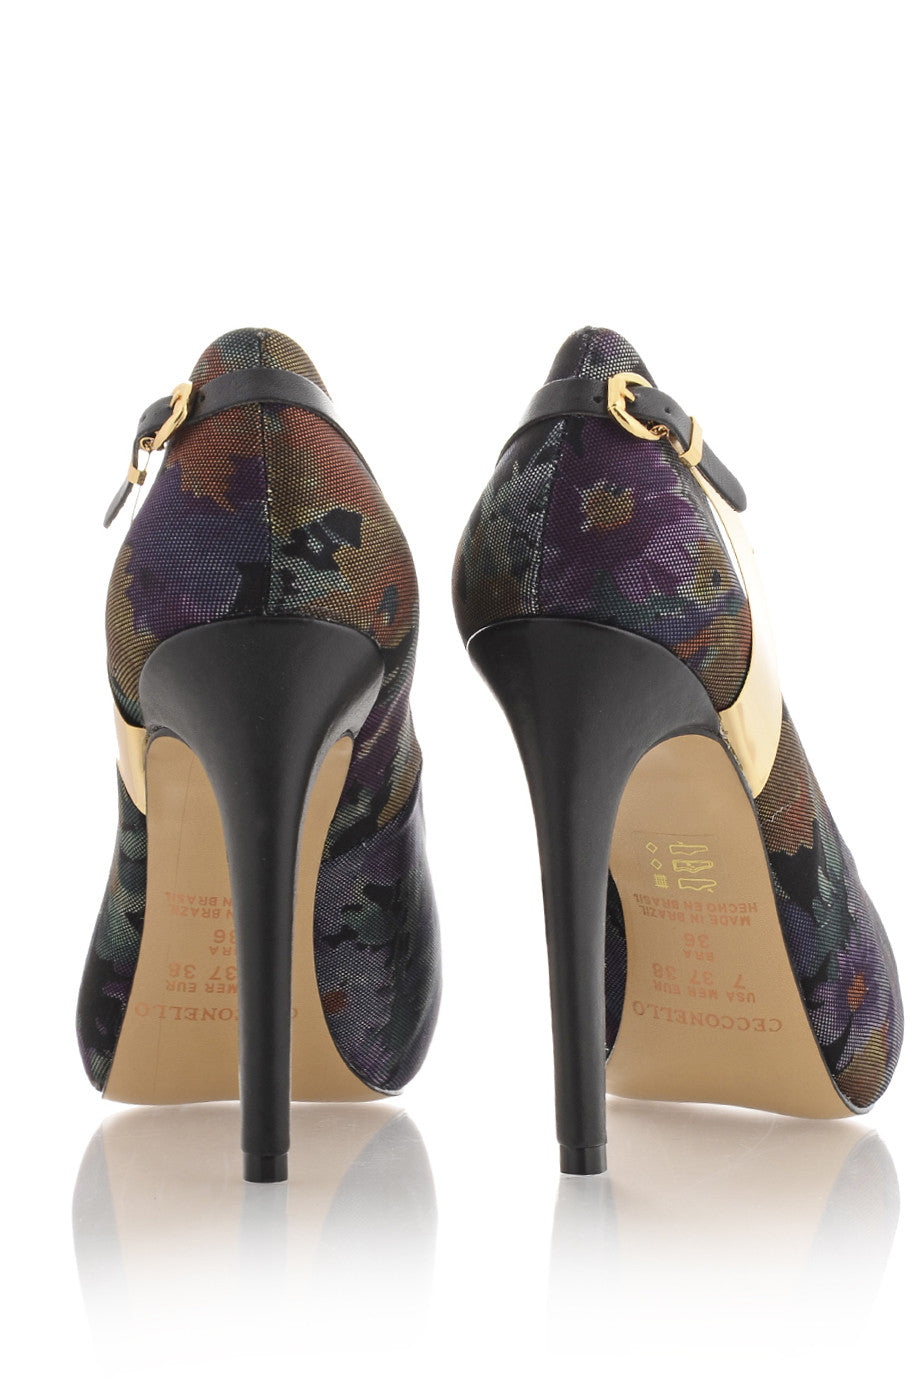 Φλοράλ Πολύχρωμα Peep Toes - Cecconello | Γυναικεία Παπούτσια